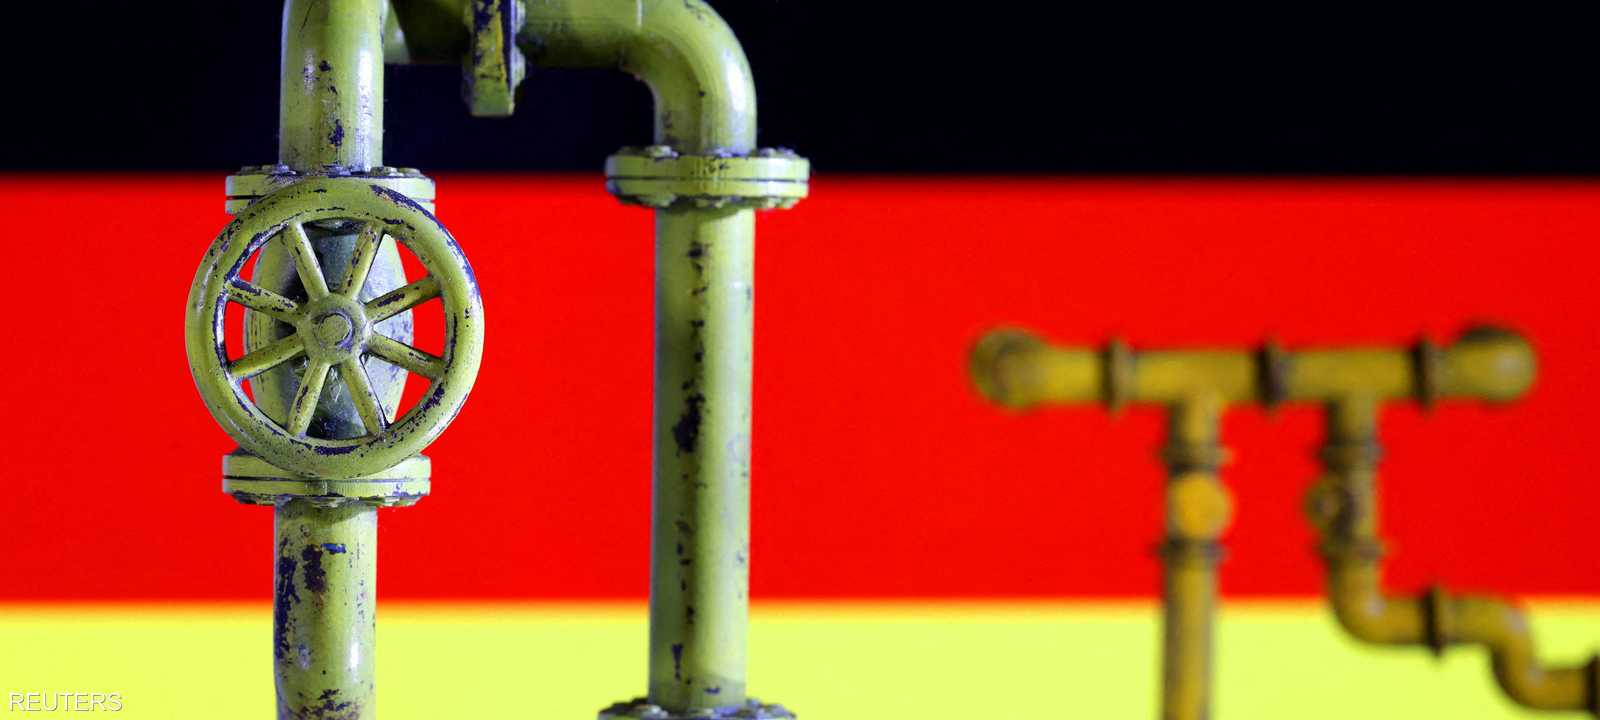 ألمانيا تتفادى "الأسوأ" في أزمة الطاقة